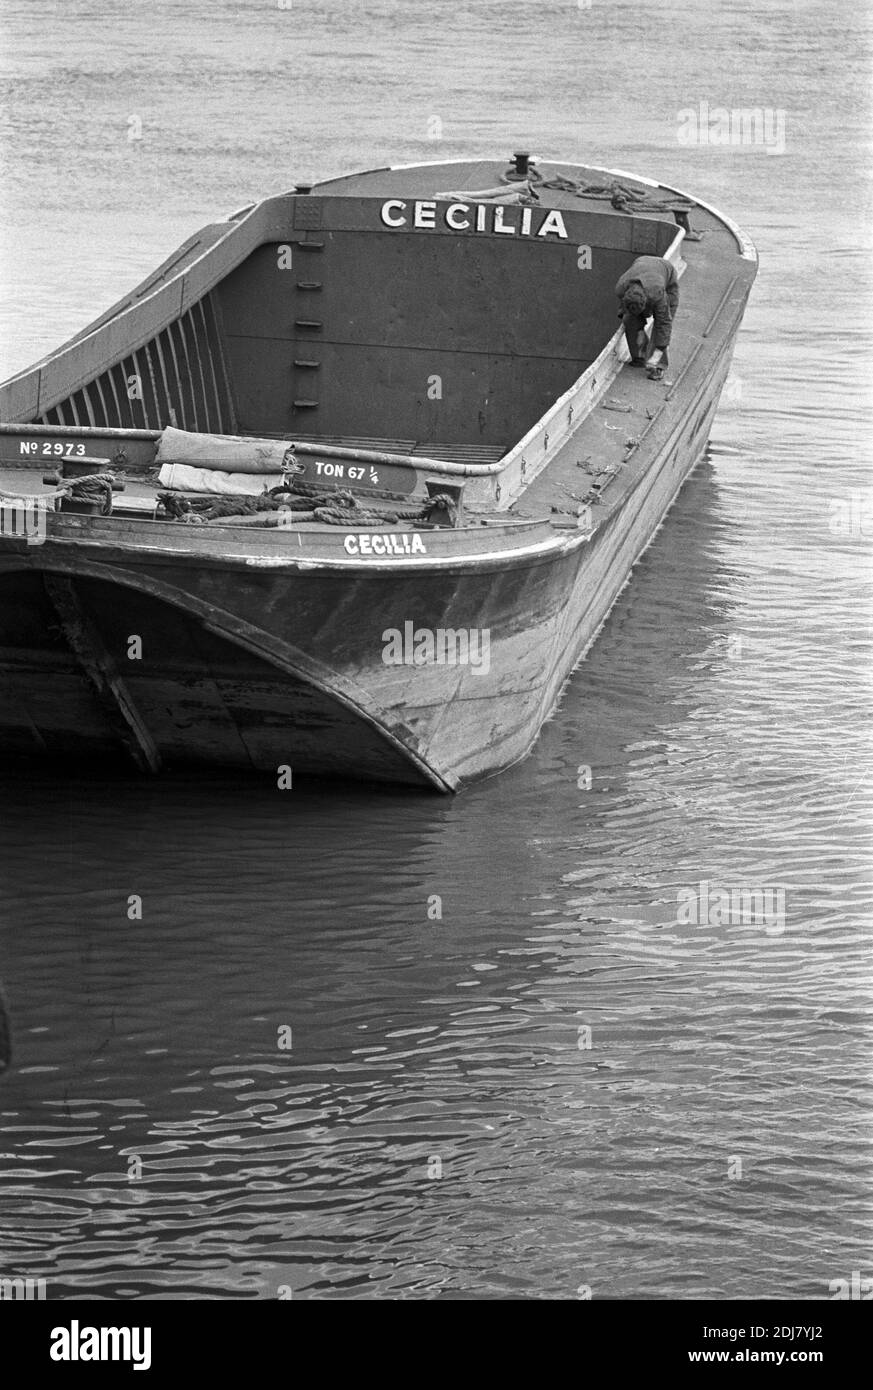 Royaume-Uni, Londres, Docklands, Isle of Dogs, River Thames, début 1974.'Cecilia' River Thames briquet ou cargaison, sans moteur, barge. Sections rivetées à la coque en acier. Banque D'Images